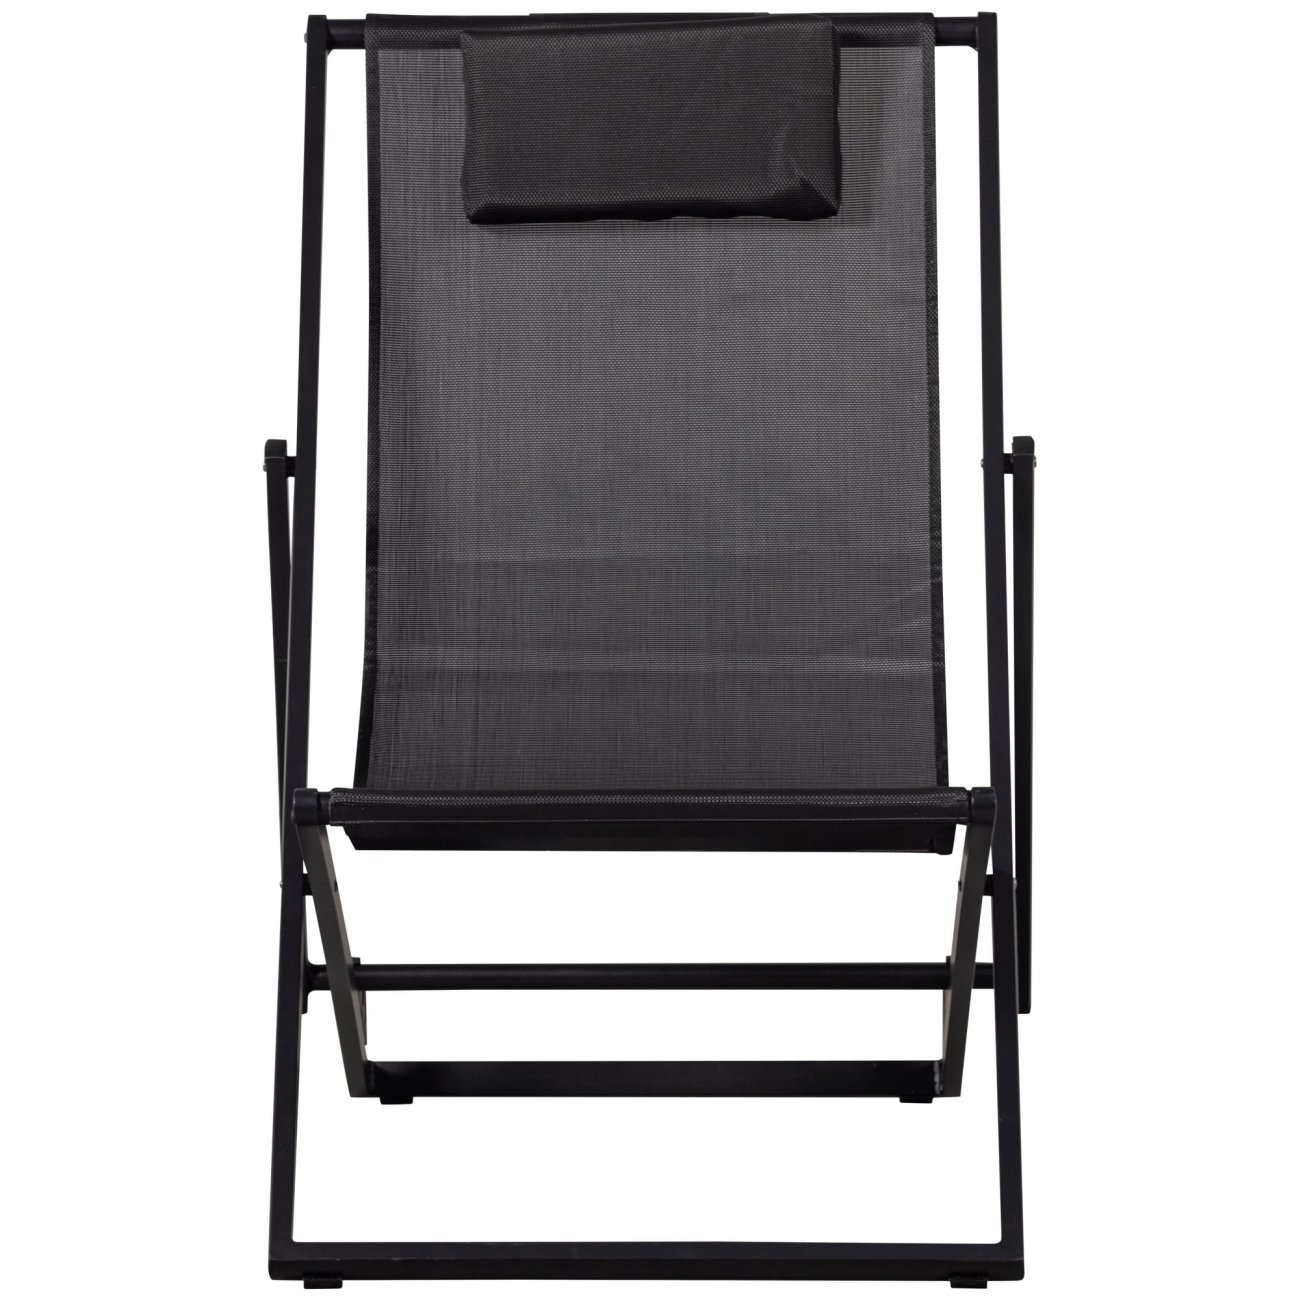 Der Liegestuhl Esper überzeugt mit seinem modernen Design. Gefertigt wurde er aus Textilene, welches einen schwarzen Farbton besitzt. Das Gestell ist aus Aluminium und hat eine schwarze Farbe. Der Stuhl besitzt eine Sitzhöhe von 35 cm.